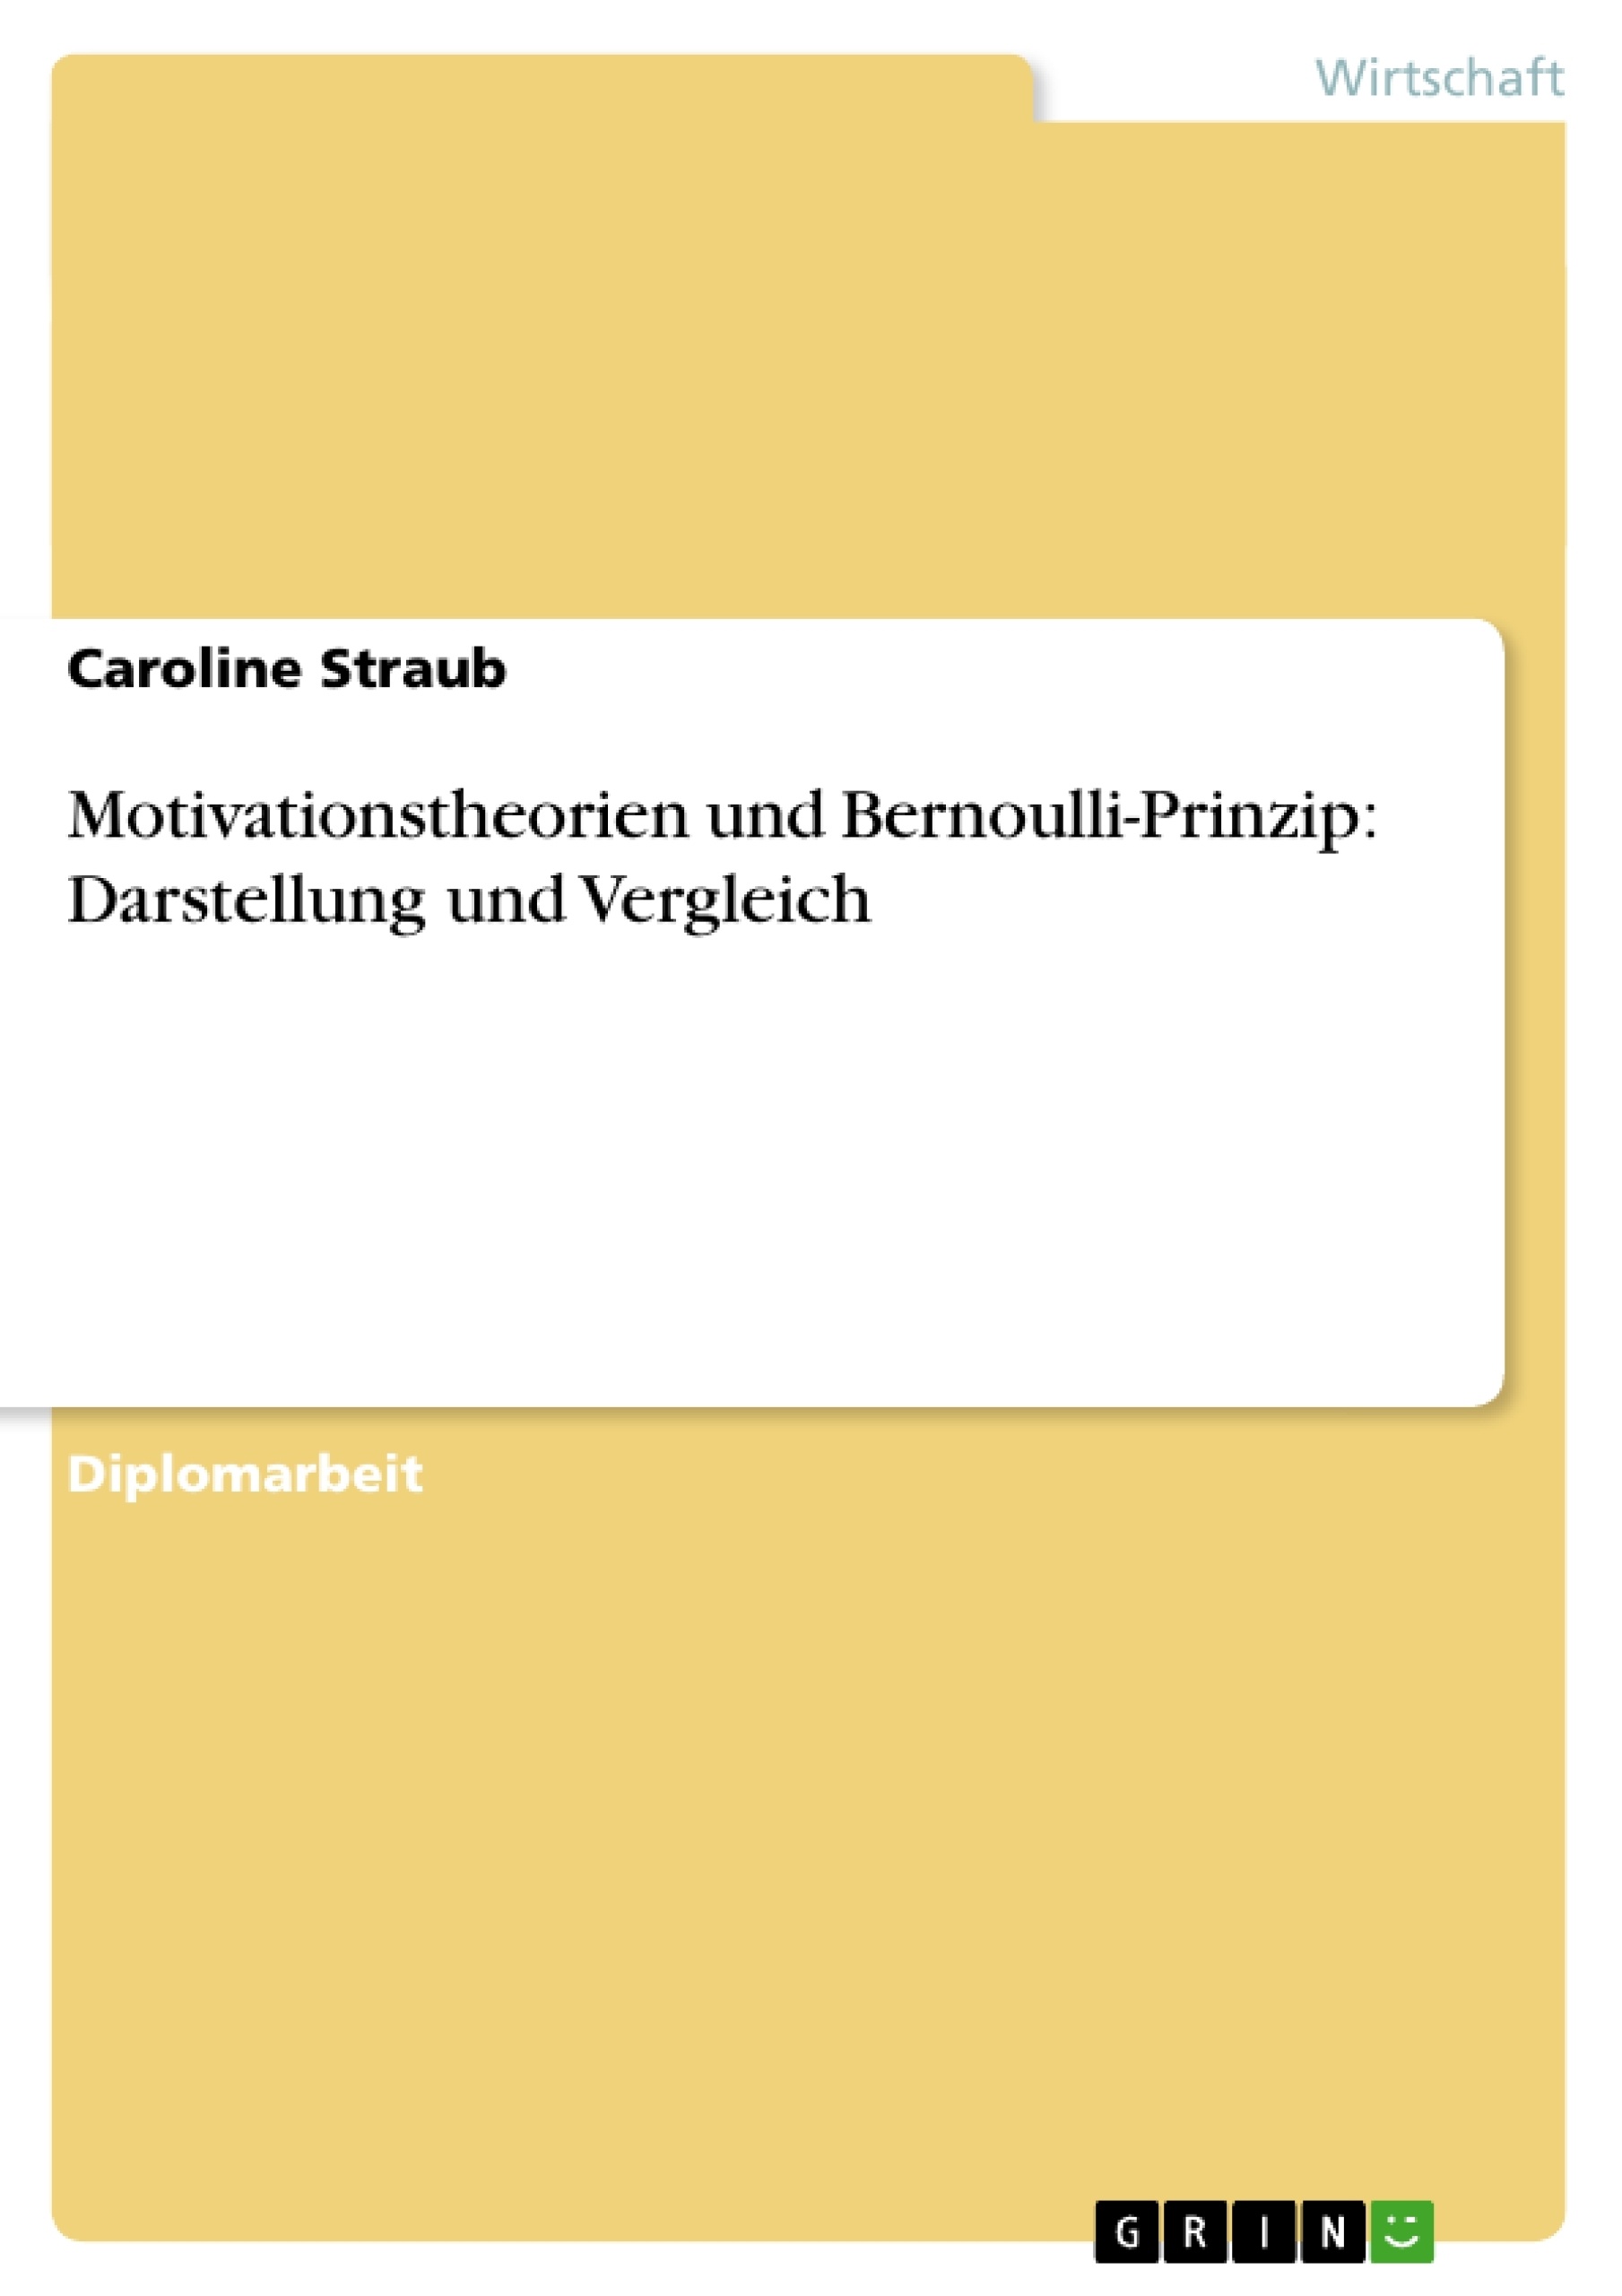 Title: Motivationstheorien und Bernoulli-Prinzip: Darstellung und Vergleich